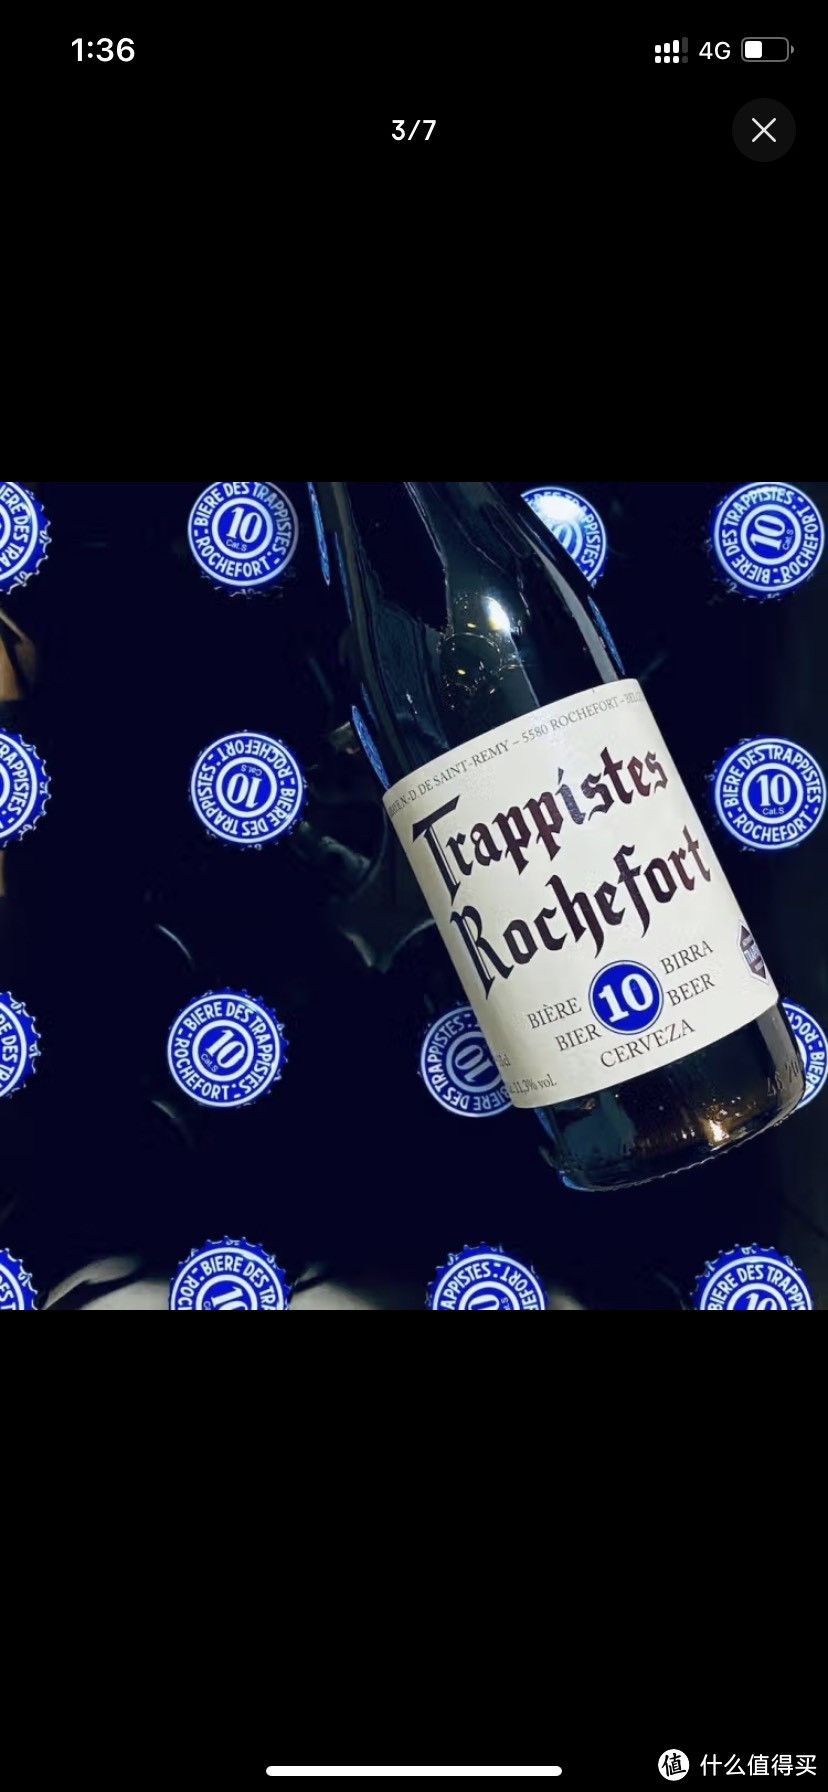 比利时修道院啤酒评测：感受传统与创新的完美结合